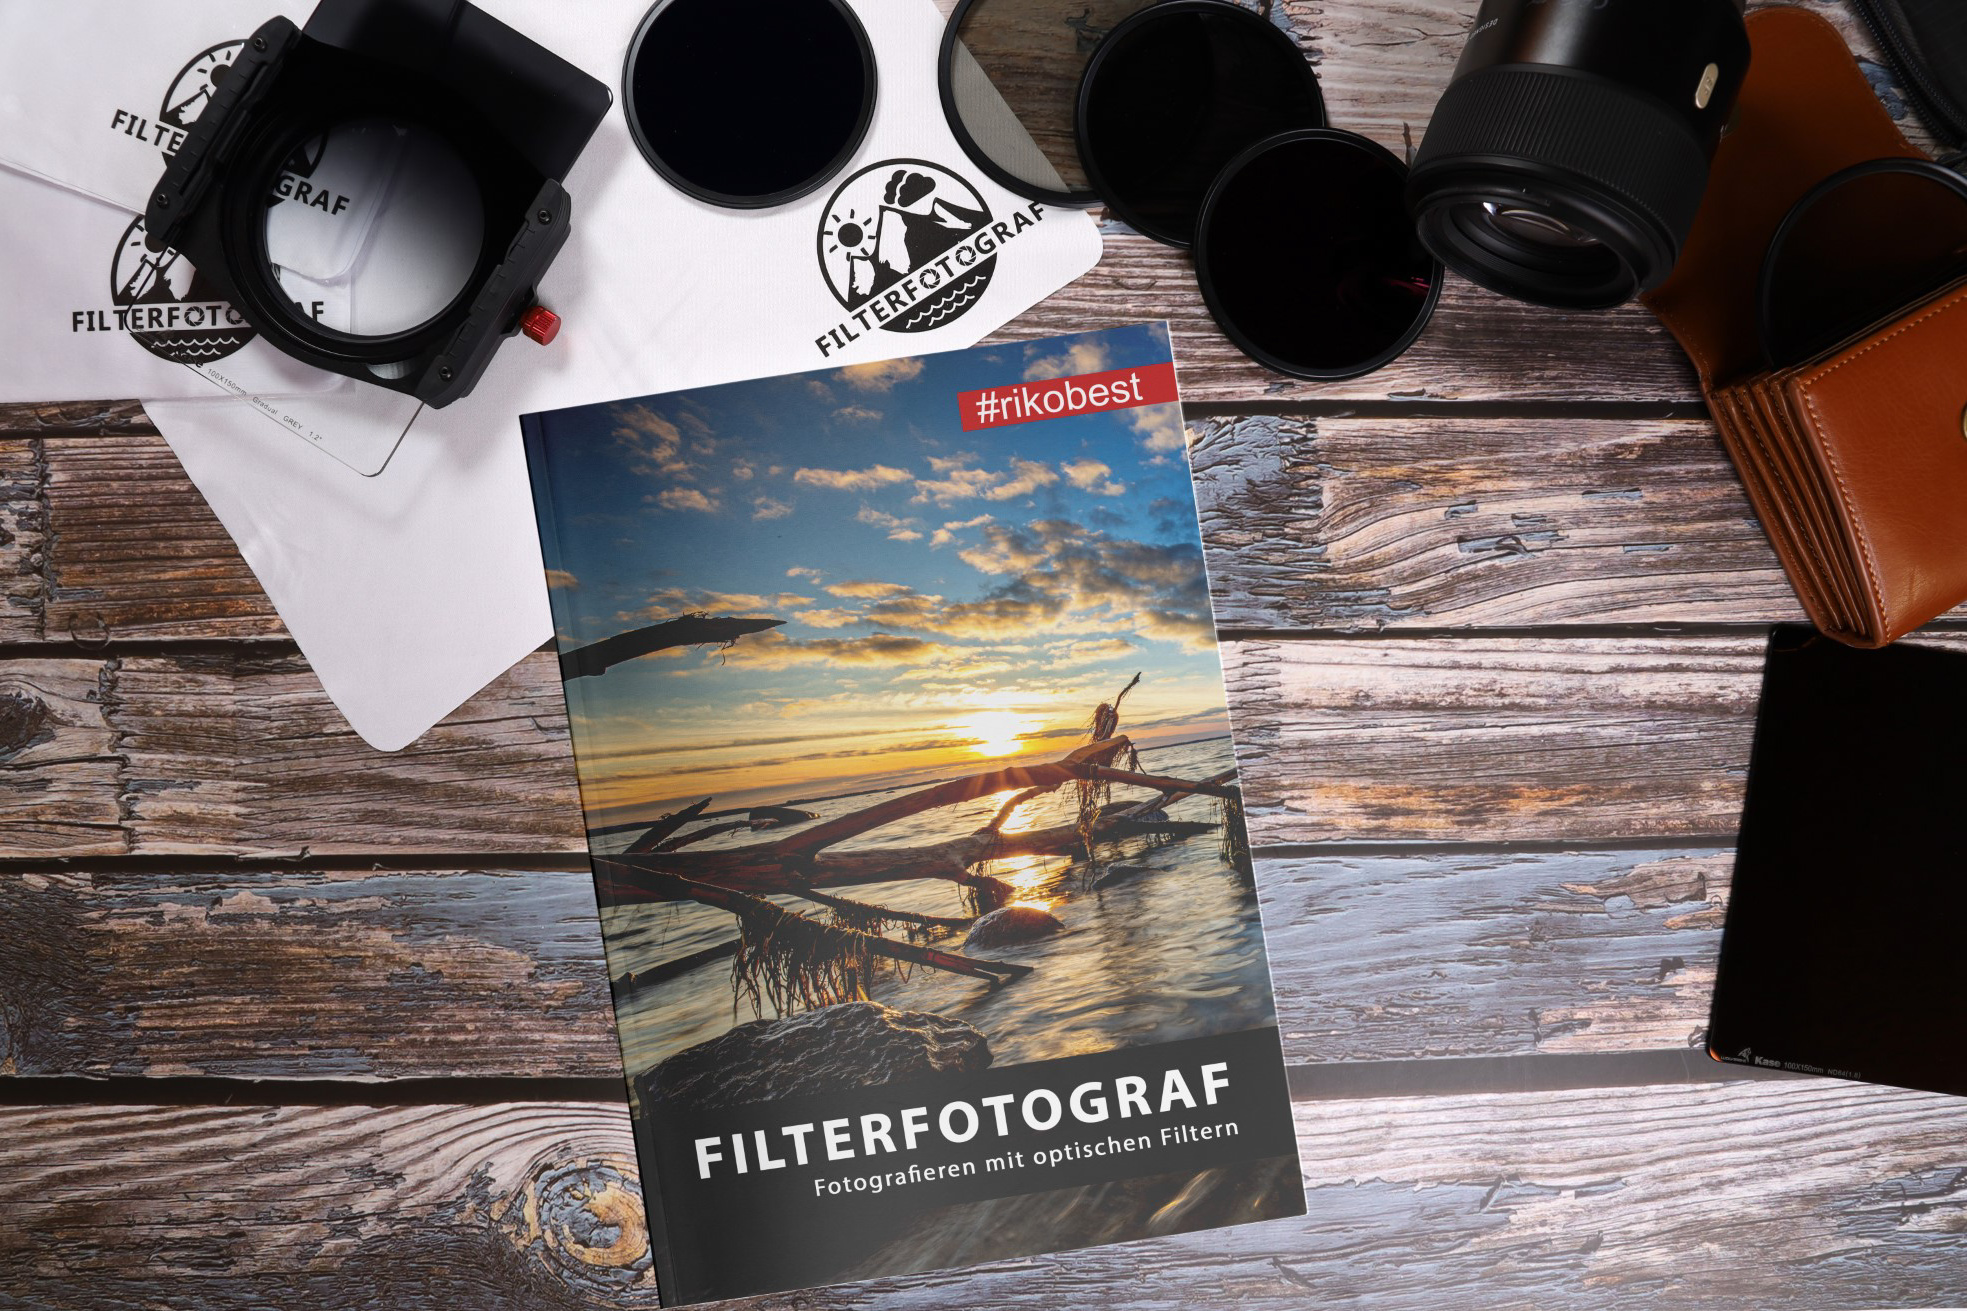 Riko Best Filterfotograf Buch 2